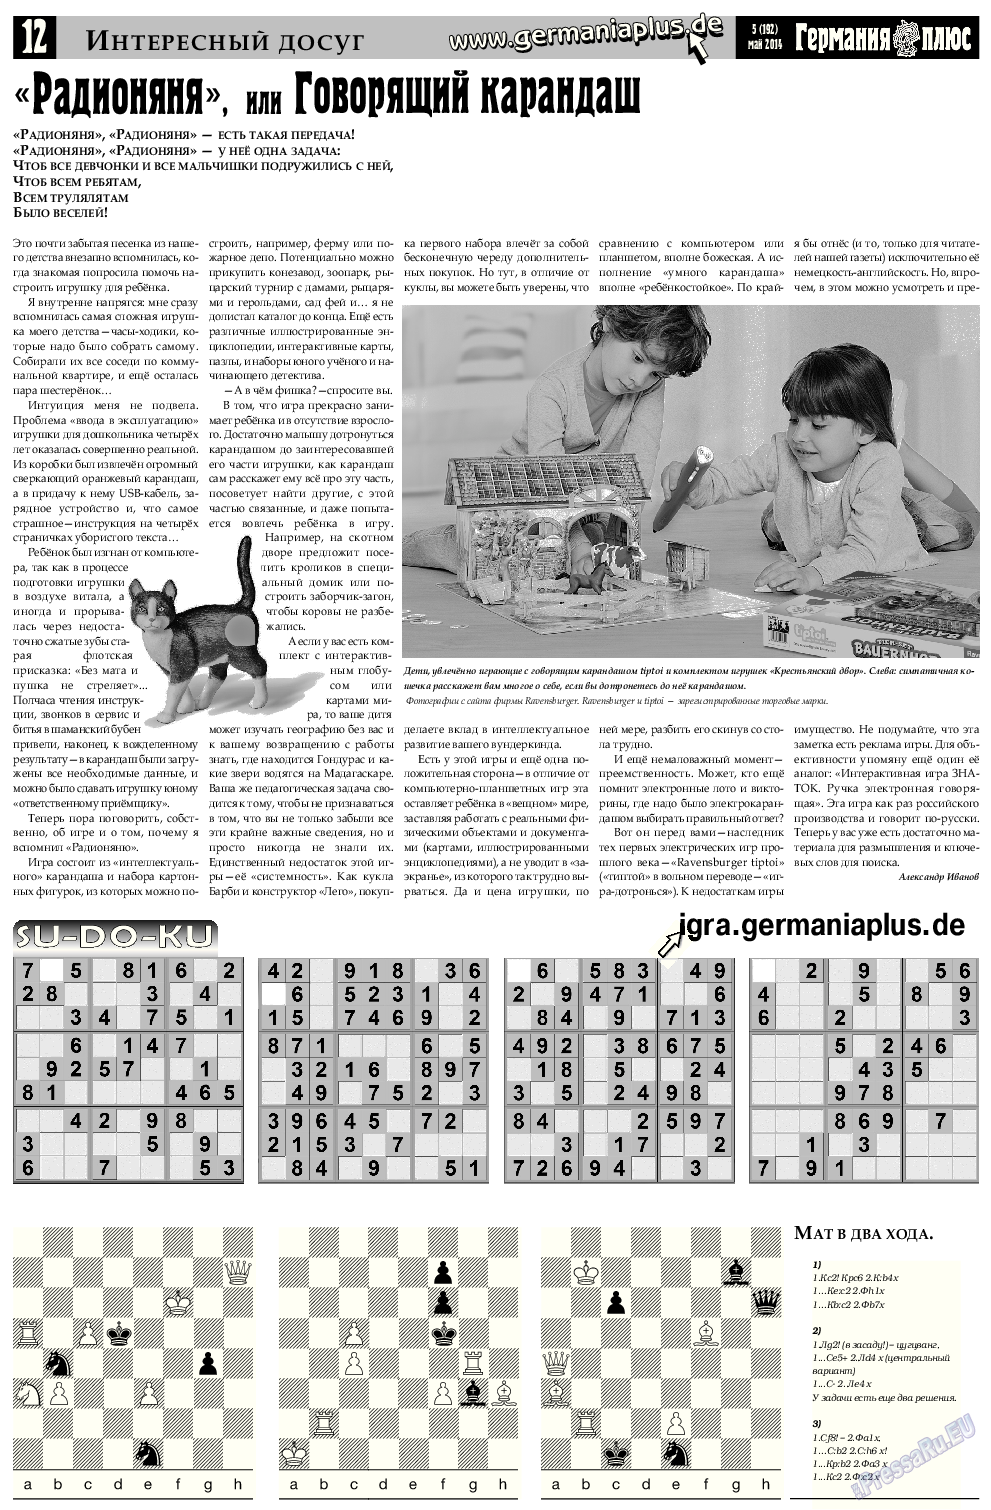 Германия плюс, газета. 2014 №5 стр.12